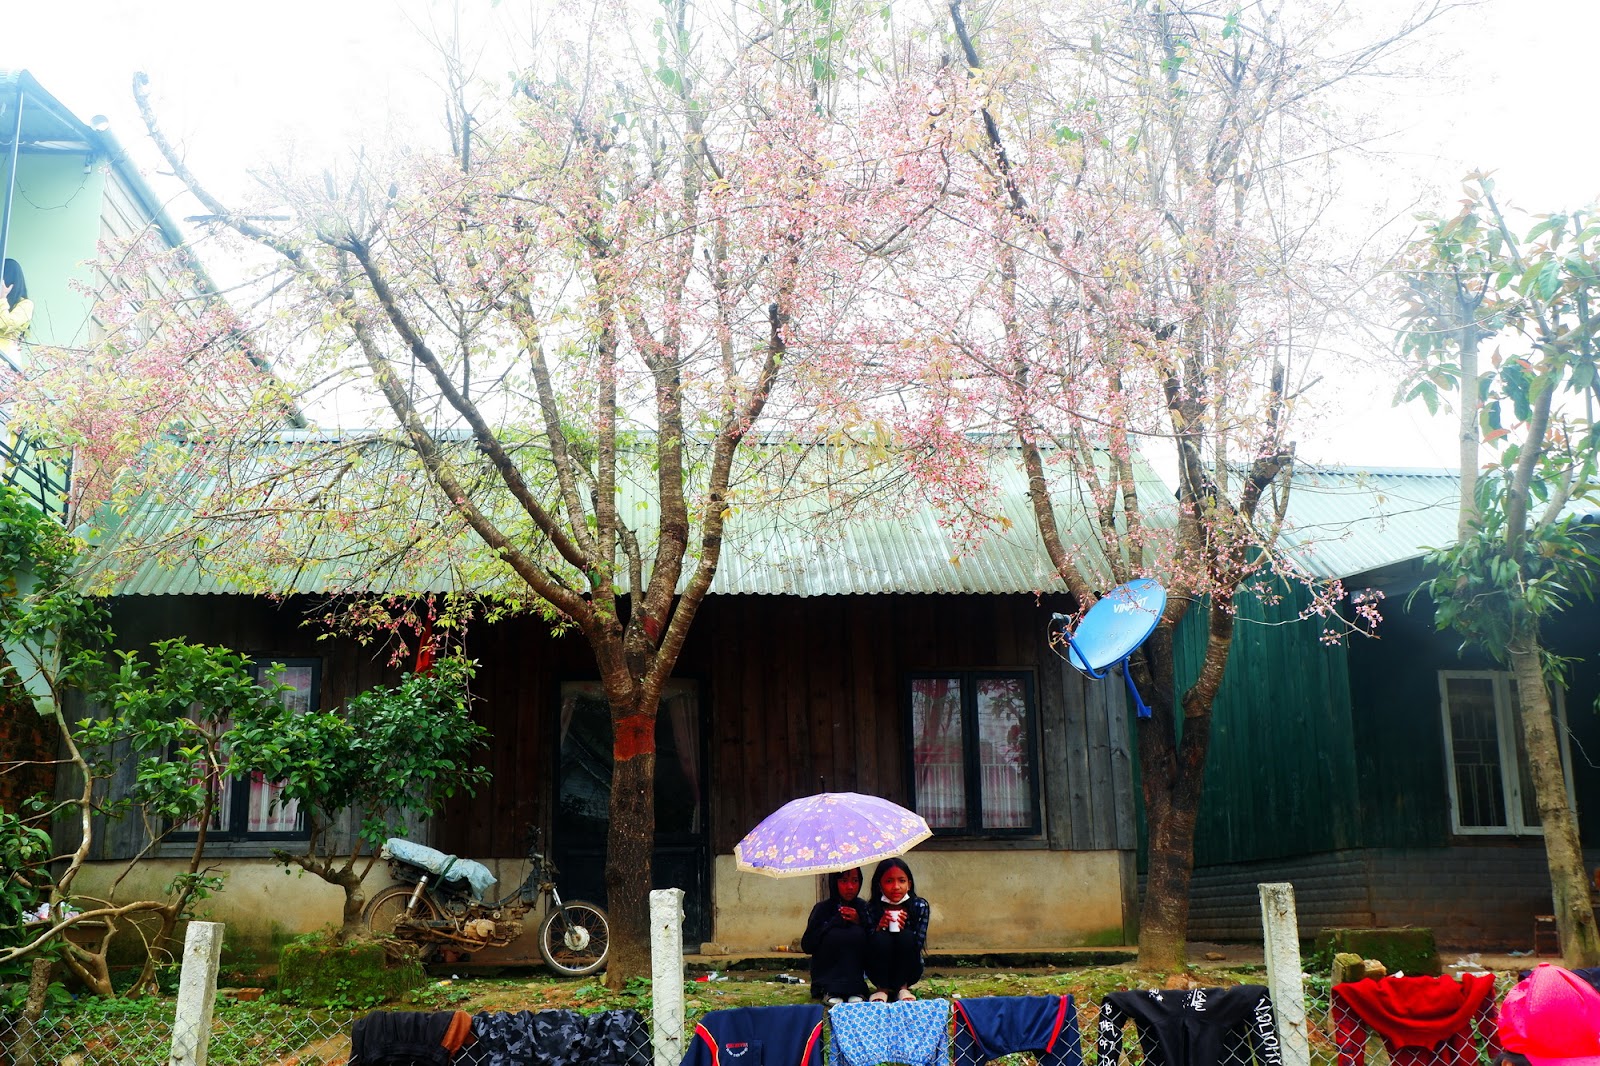 “Thành phố” hoa đào bung nở tuyệt đẹp ở một ngôi làng nhỏ bình yên - 7